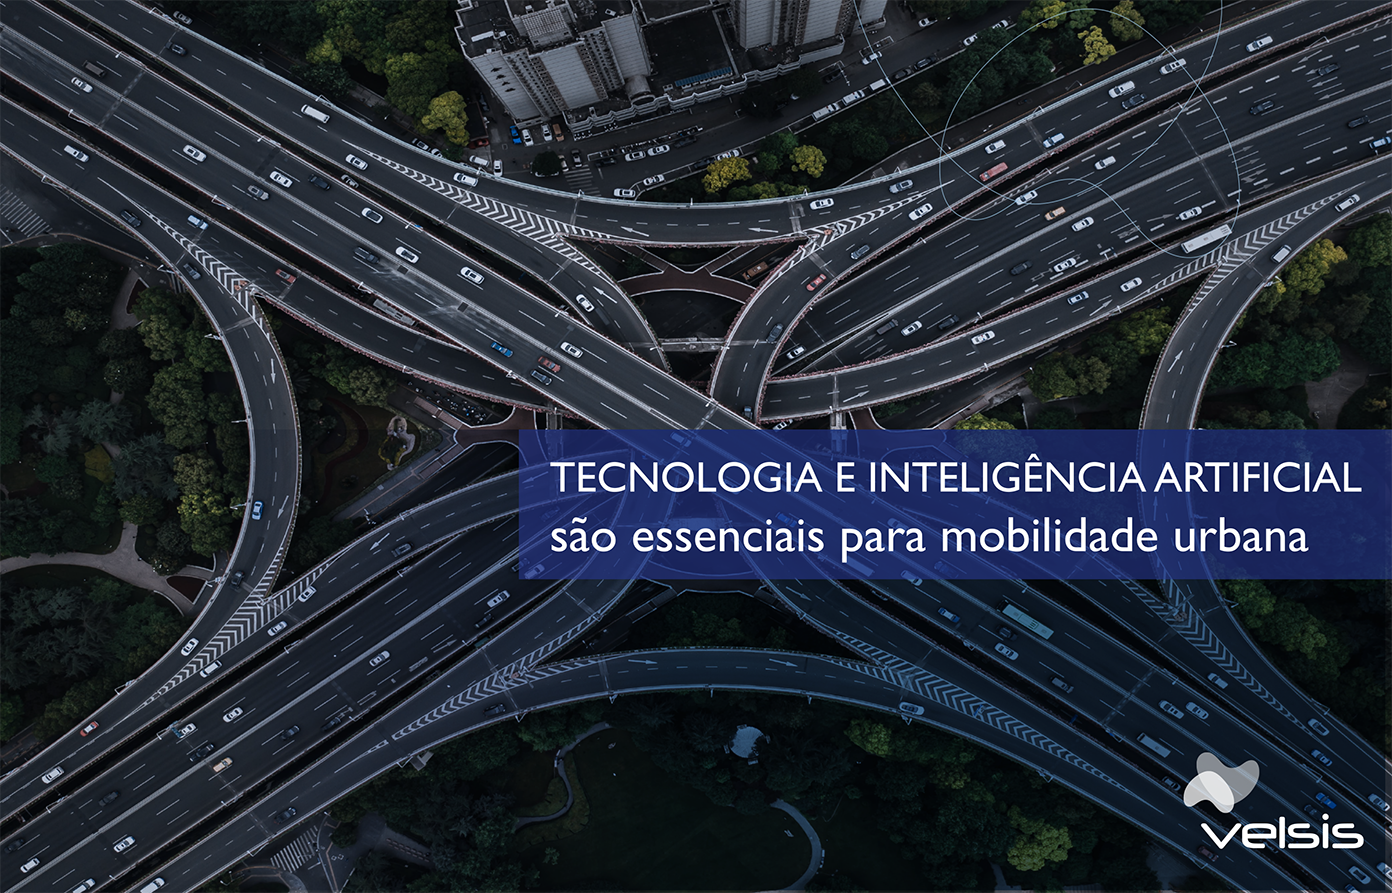 Tecnologia e inteligência artificial tornam-se essenciais para melhoria da mobilidade urbana